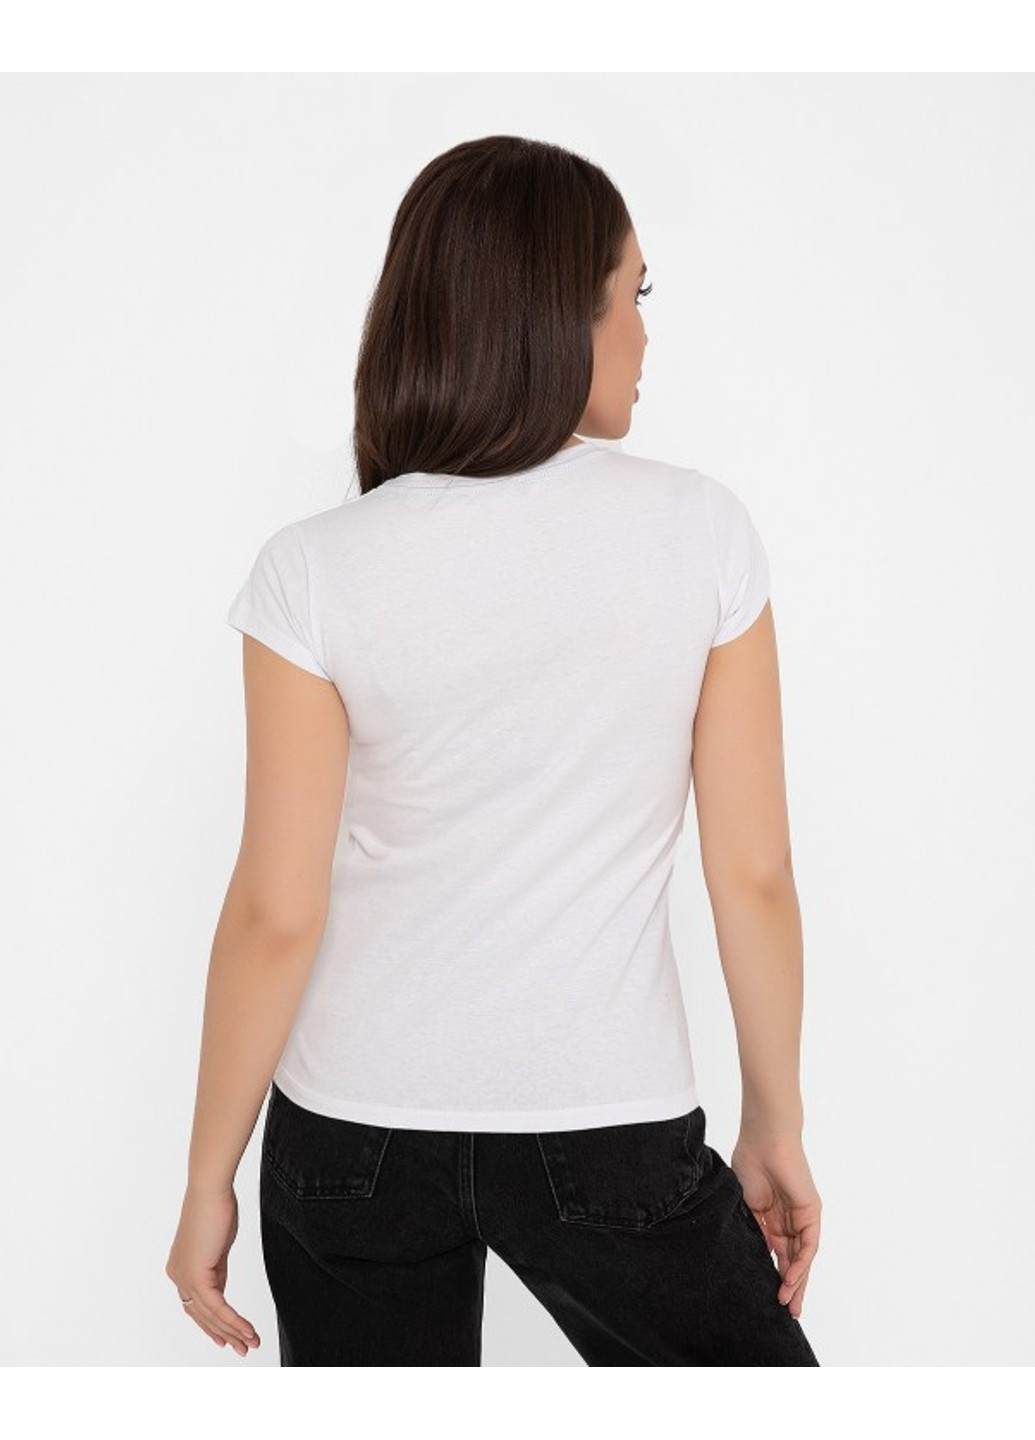 Біла футболка wn20-137 білий ISSA PLUS